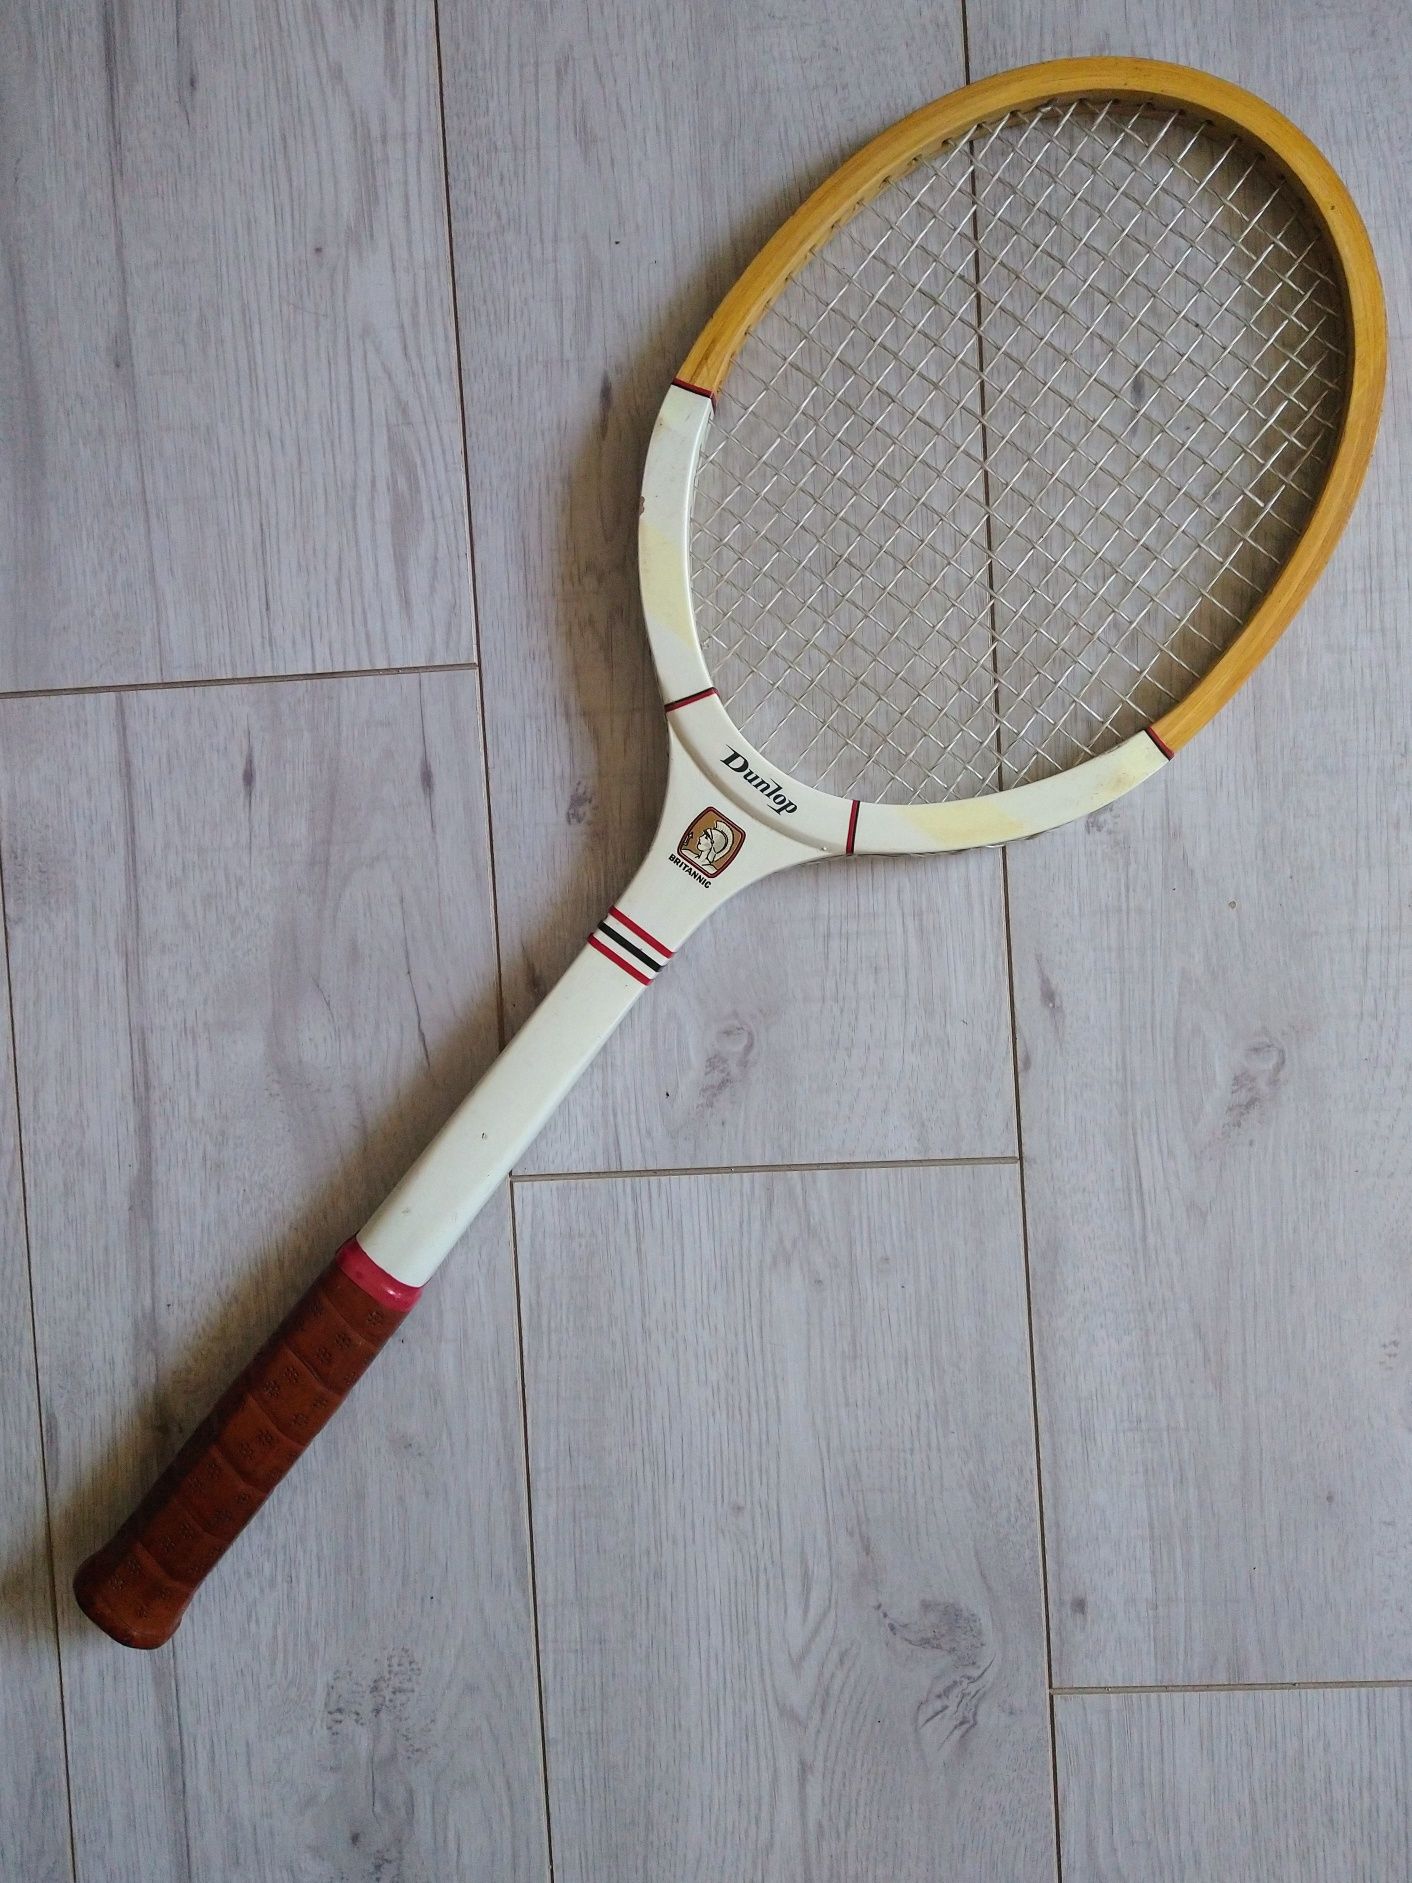 Kolekcjonerska rakieta tenisowa Dunlop Britannic